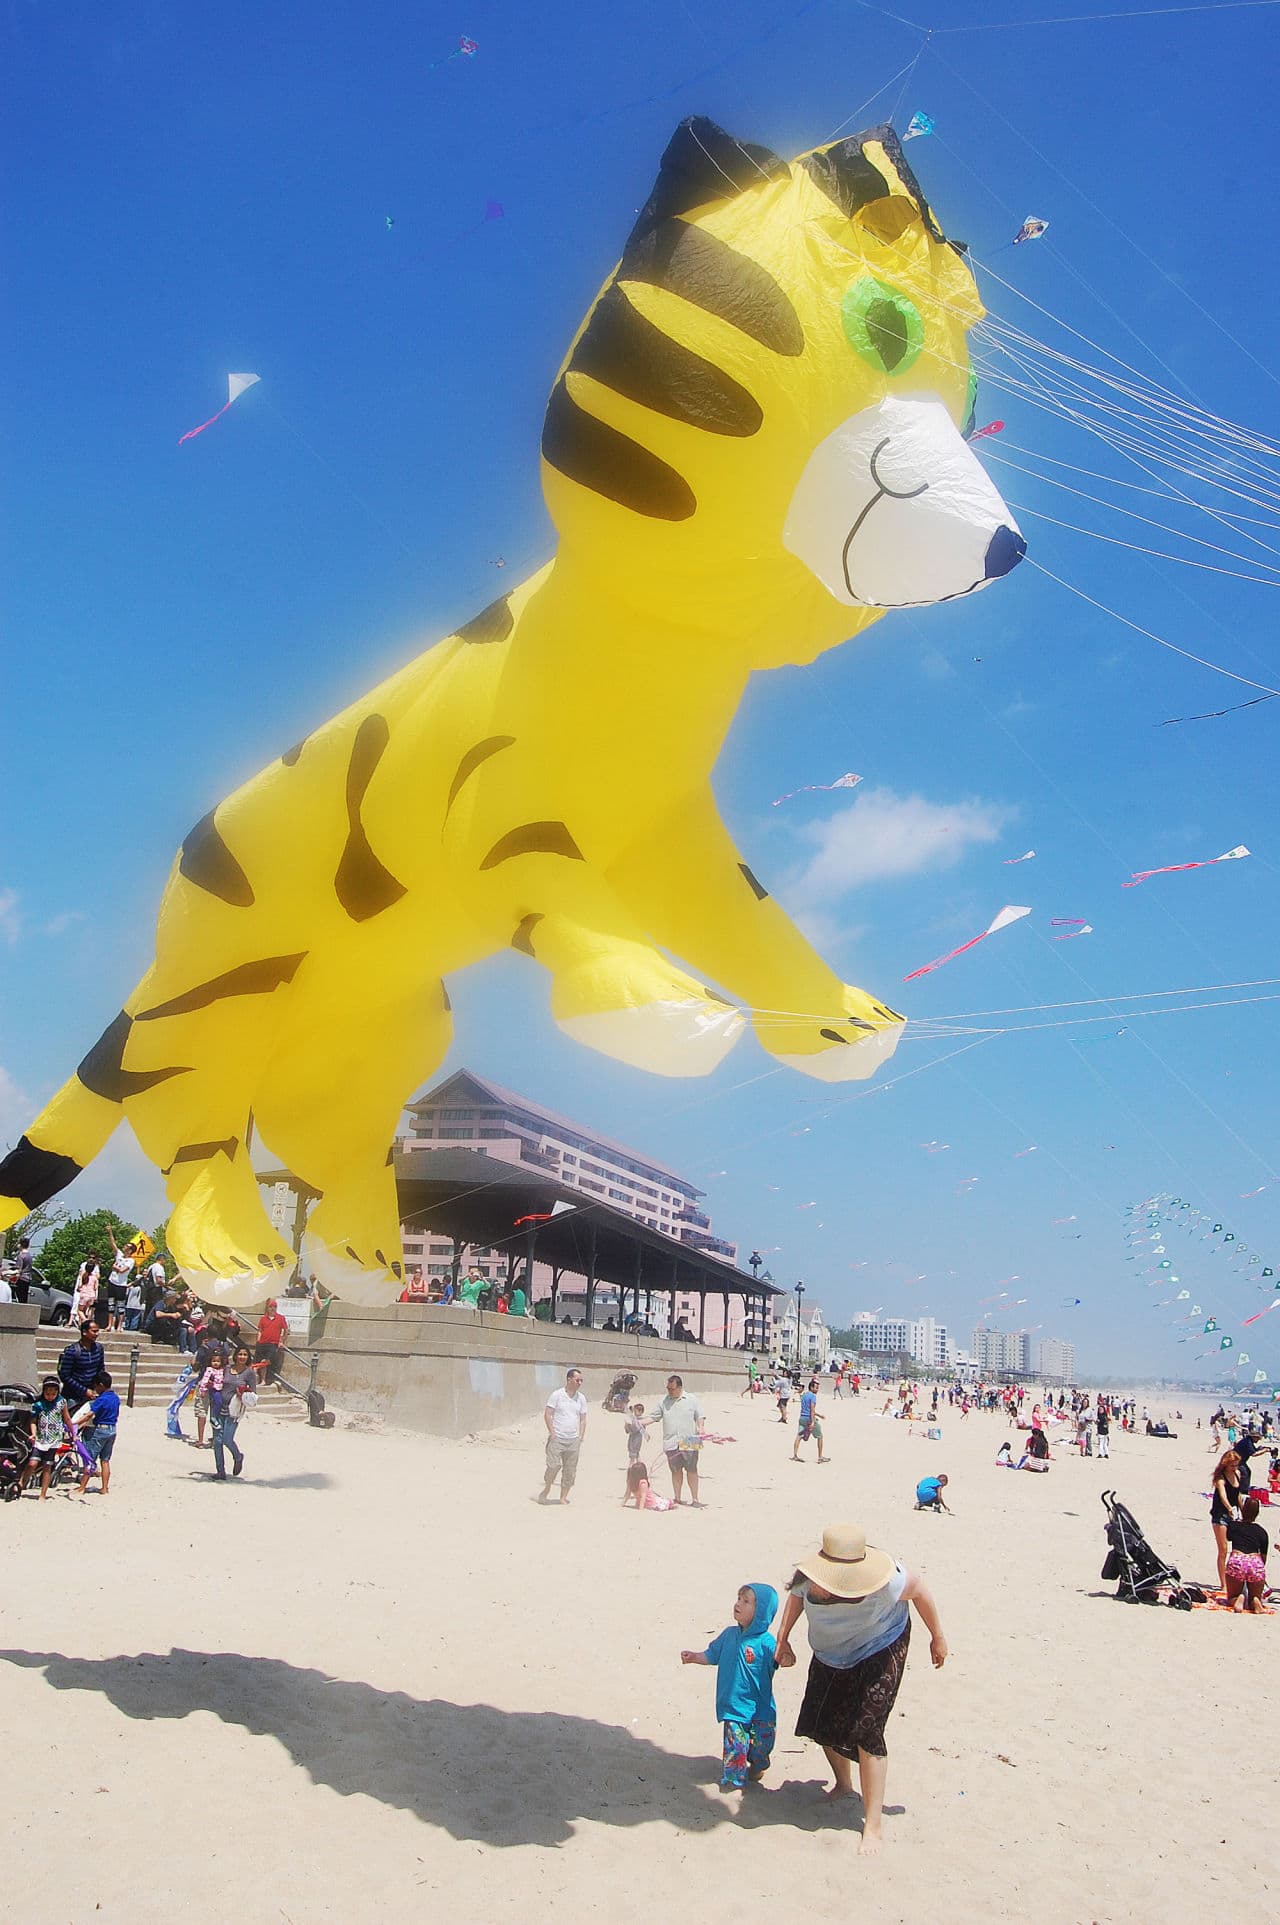 Tiger kite at Revere Beach Kite Festival. (Greg Cook)